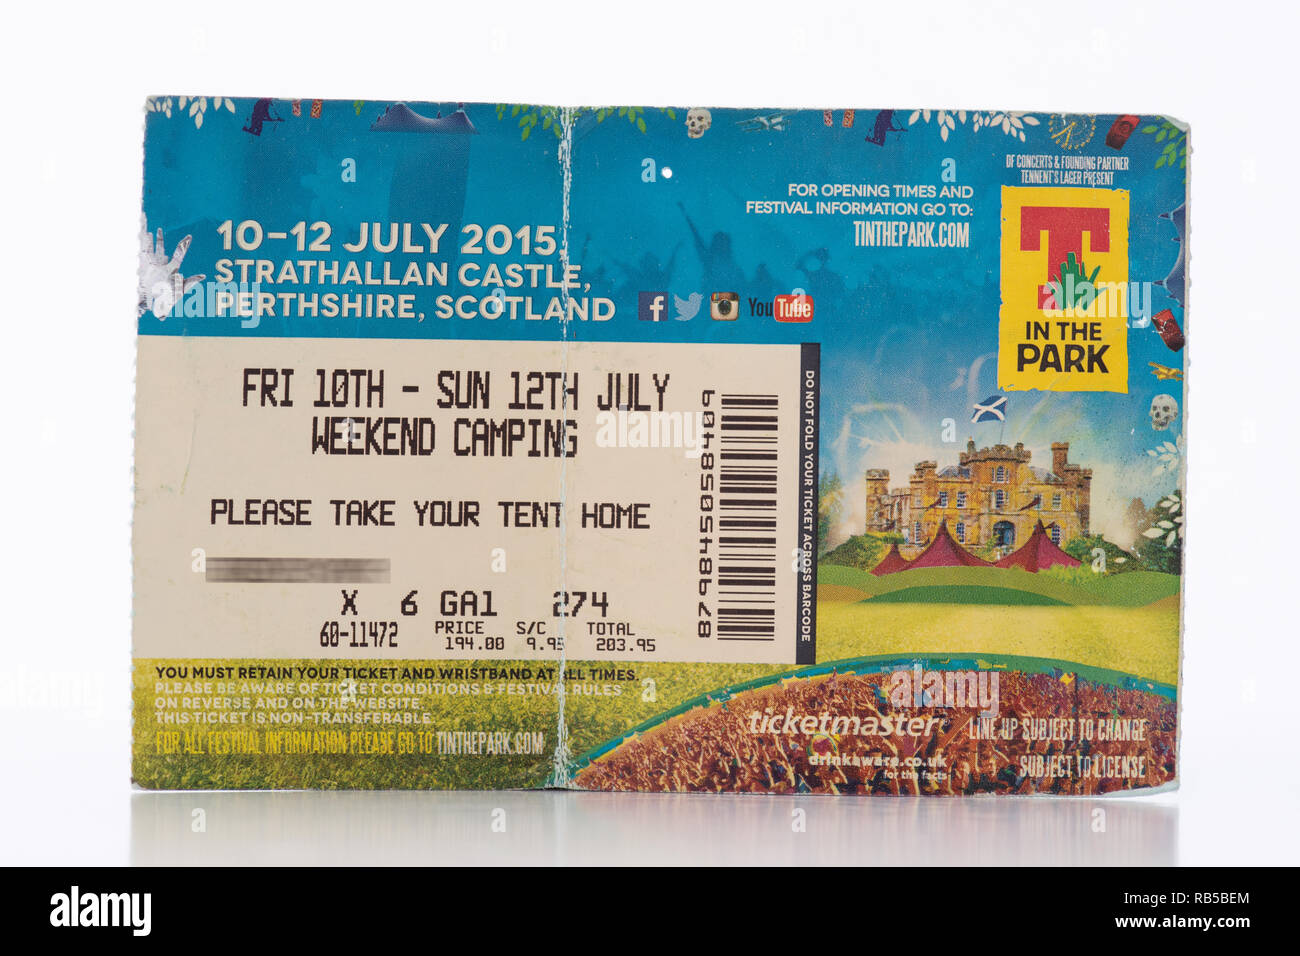 Ticket T in the Park 2015 Strathallan Castle, Scotland, UK (nom des détenteurs de billets pour la vie privée obscurcie) - festival de musique écossaise Banque D'Images